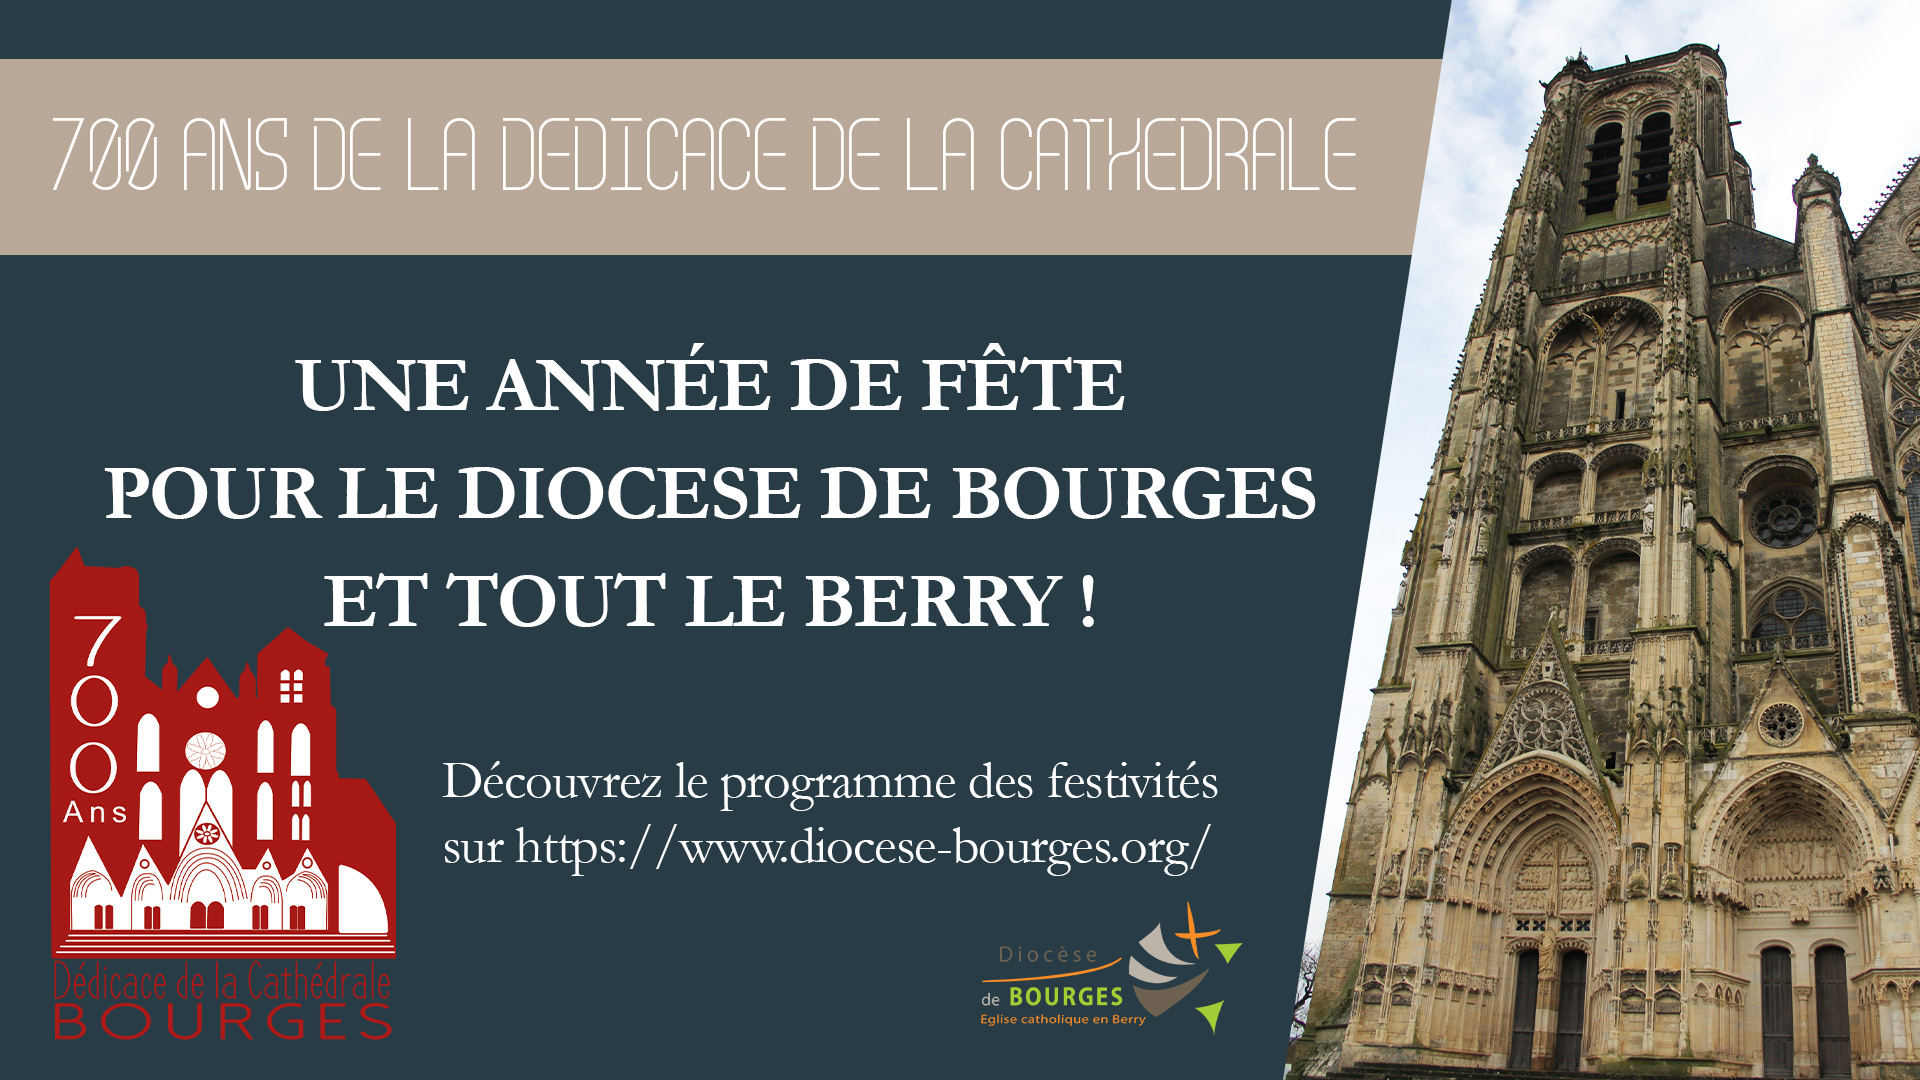 700 ans de la dédicace de la cathédrale de Bourges